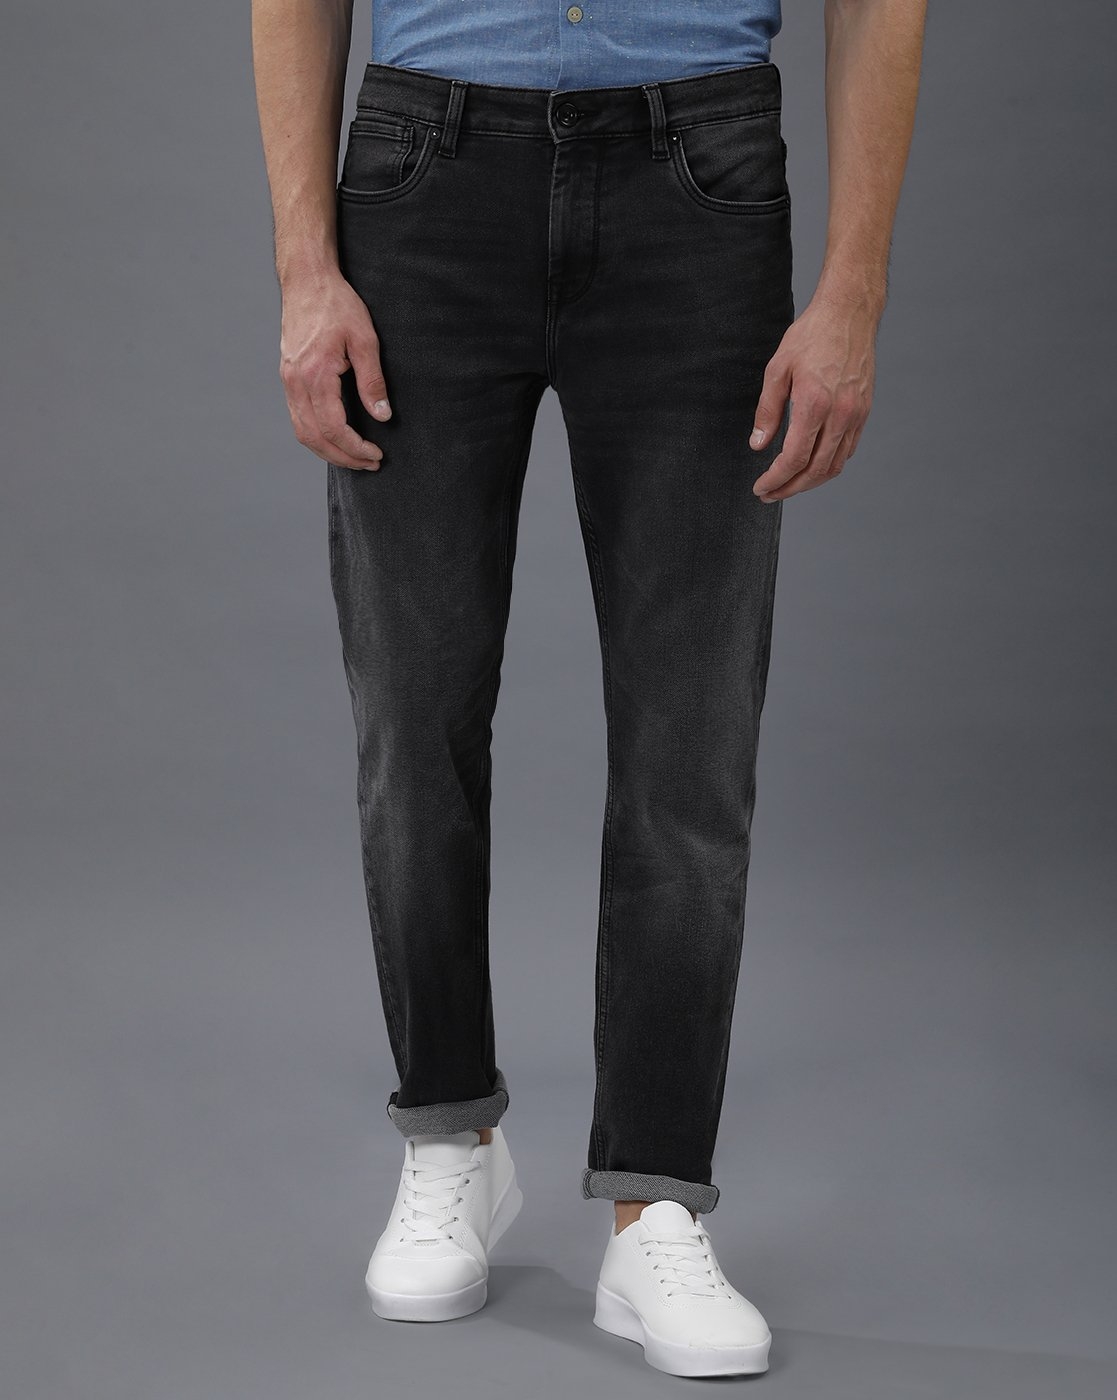 VOI JEANS | Men's Black Casual Clean Look Jeans ( VOJN1351 )